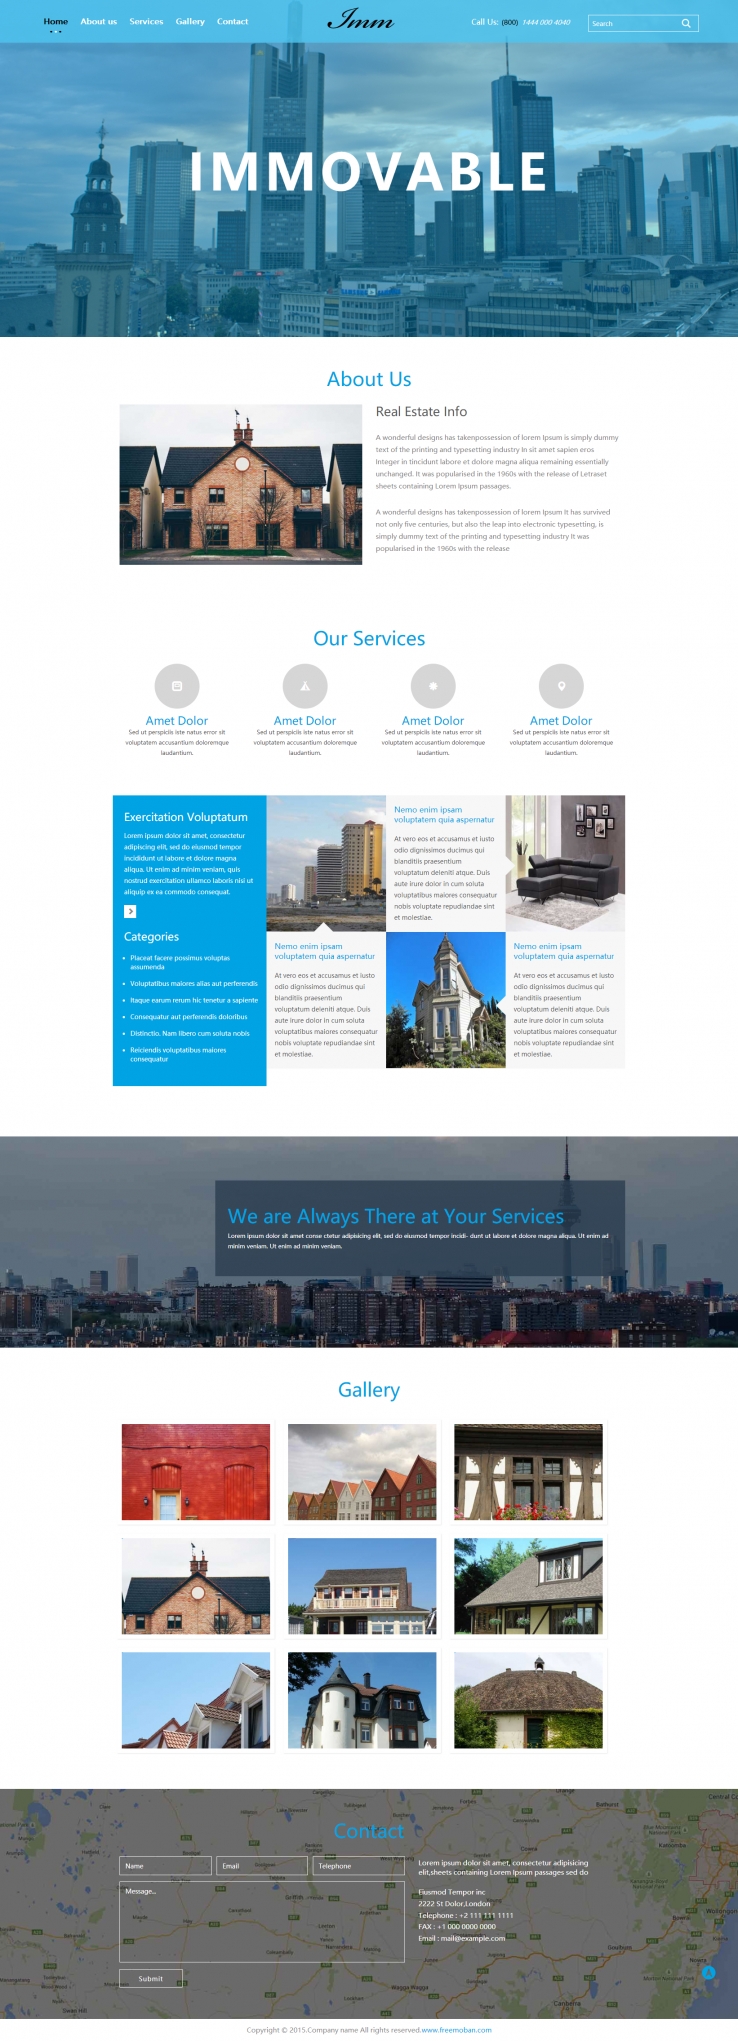 蓝色大气风格的城市别墅设计网页模板下载